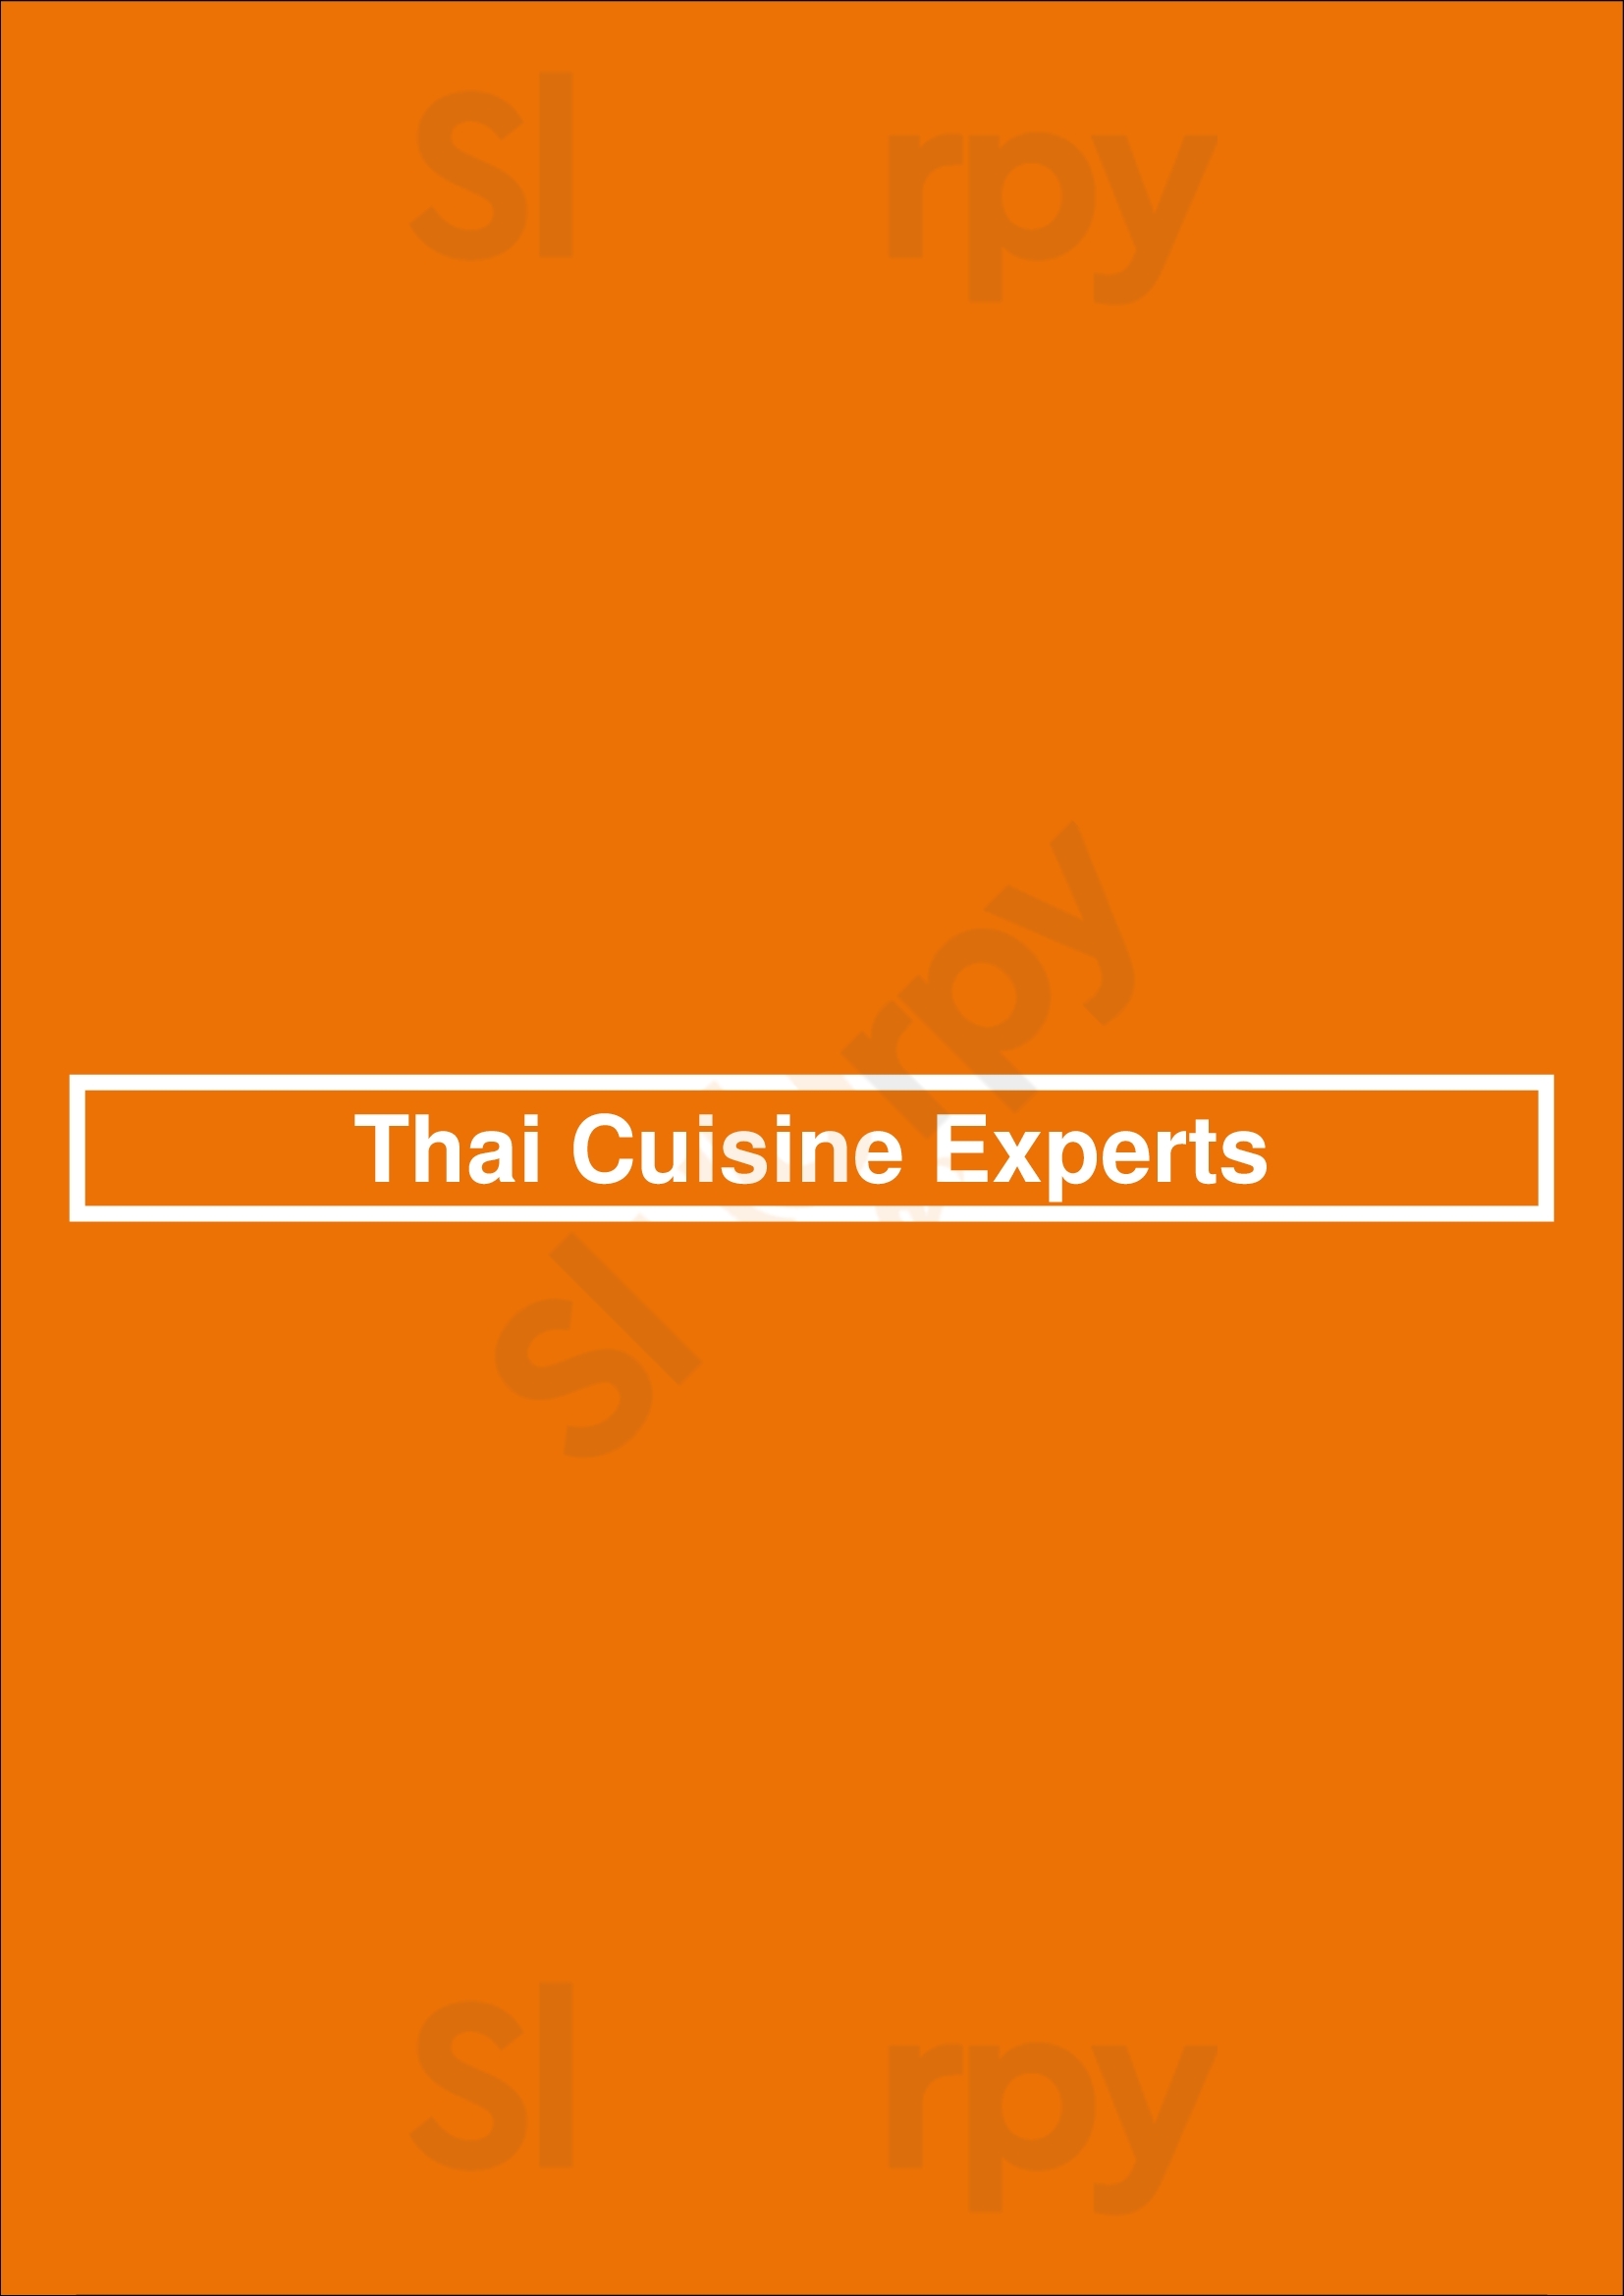 Thai Cuisine Experts Mississauga Menu - 1